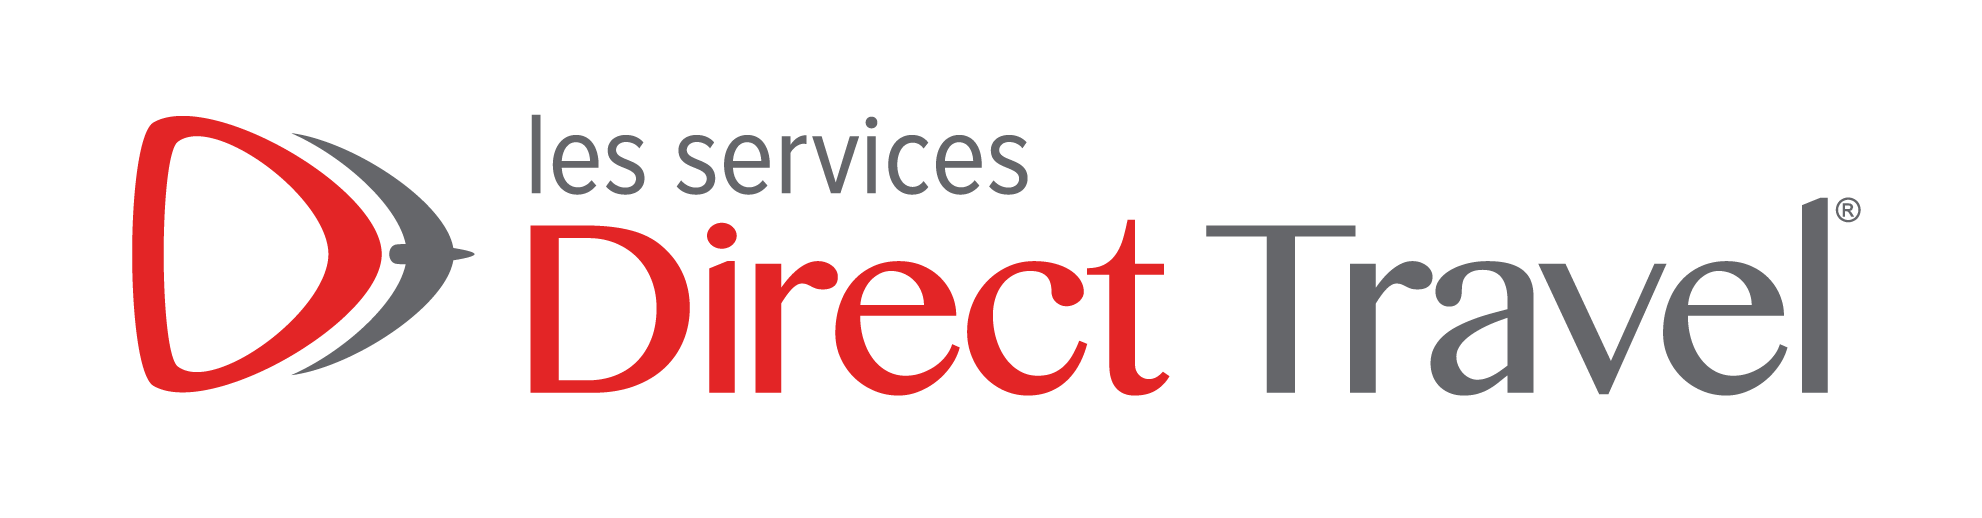 les services direct travel